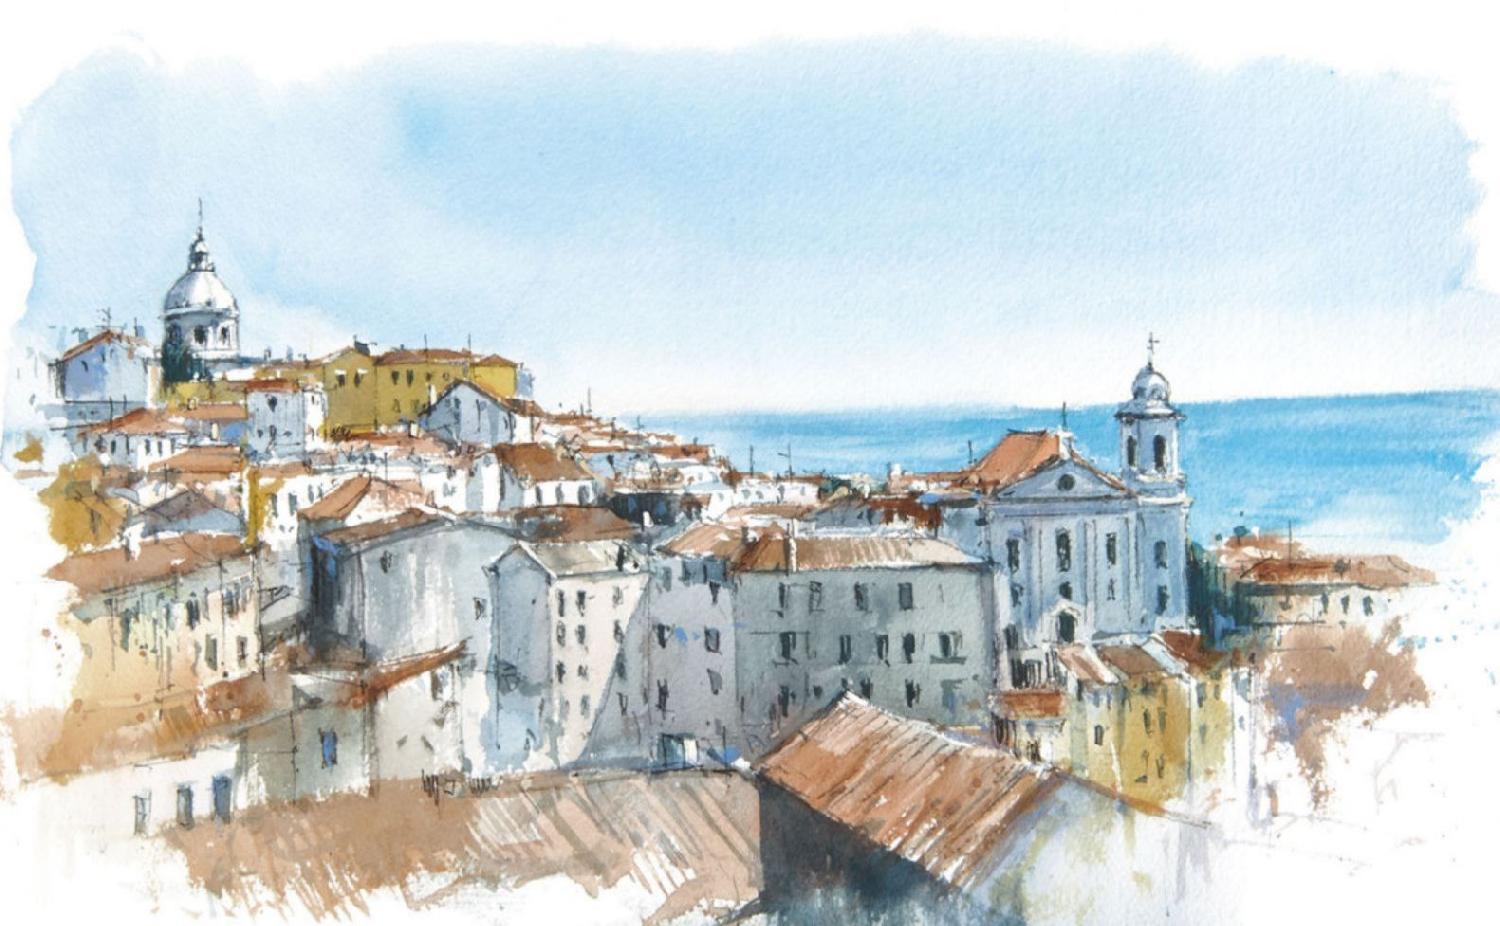 Un viaje a través de los sentidos: La vista. La belleza de Lisboa